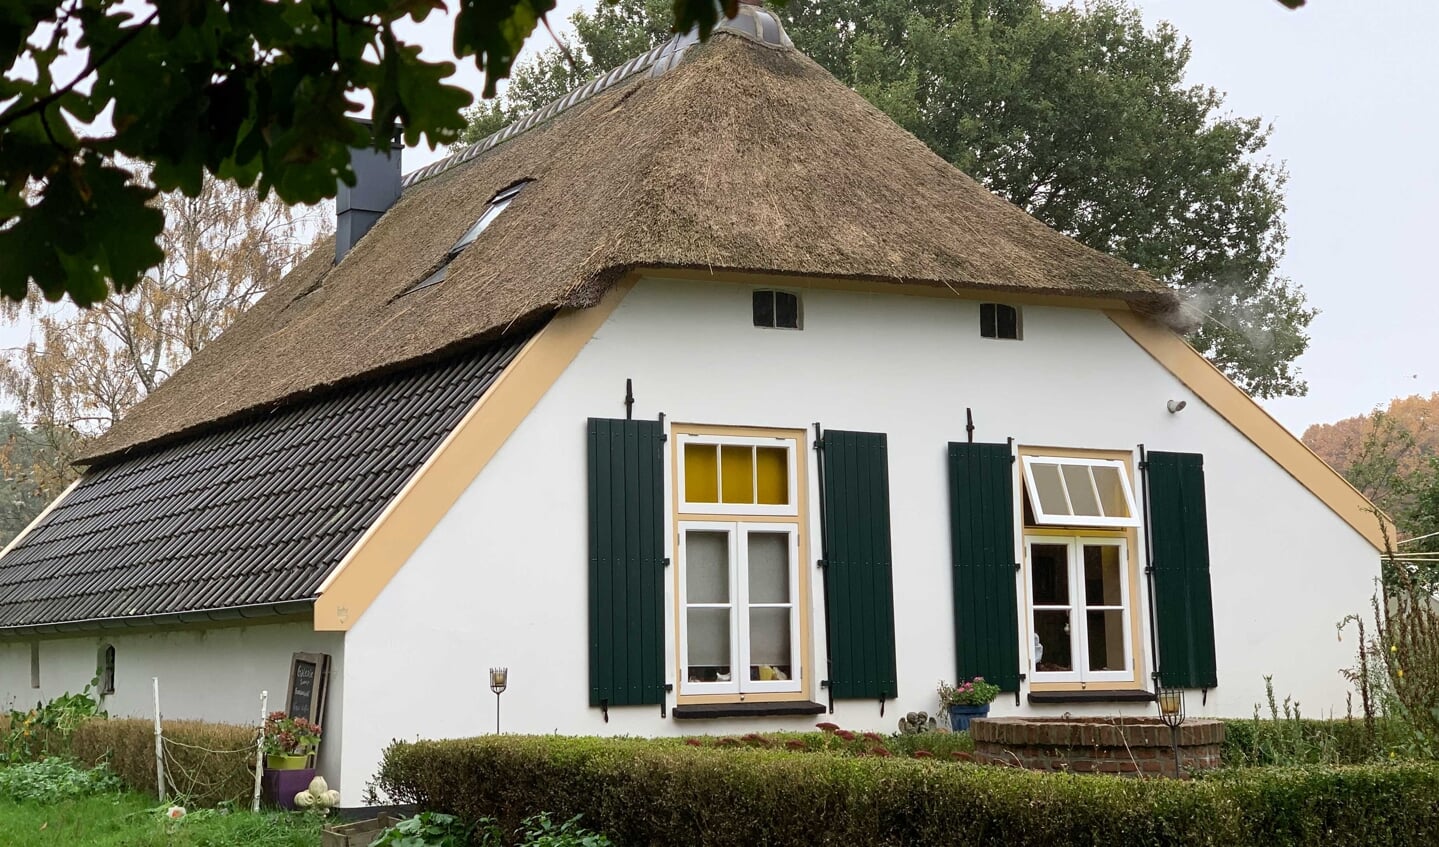 De Witte Hemel in Drempt kreeg de meeste stemmen en ontvangt de publieksprijs. Foto: Liesbeth Pieterse